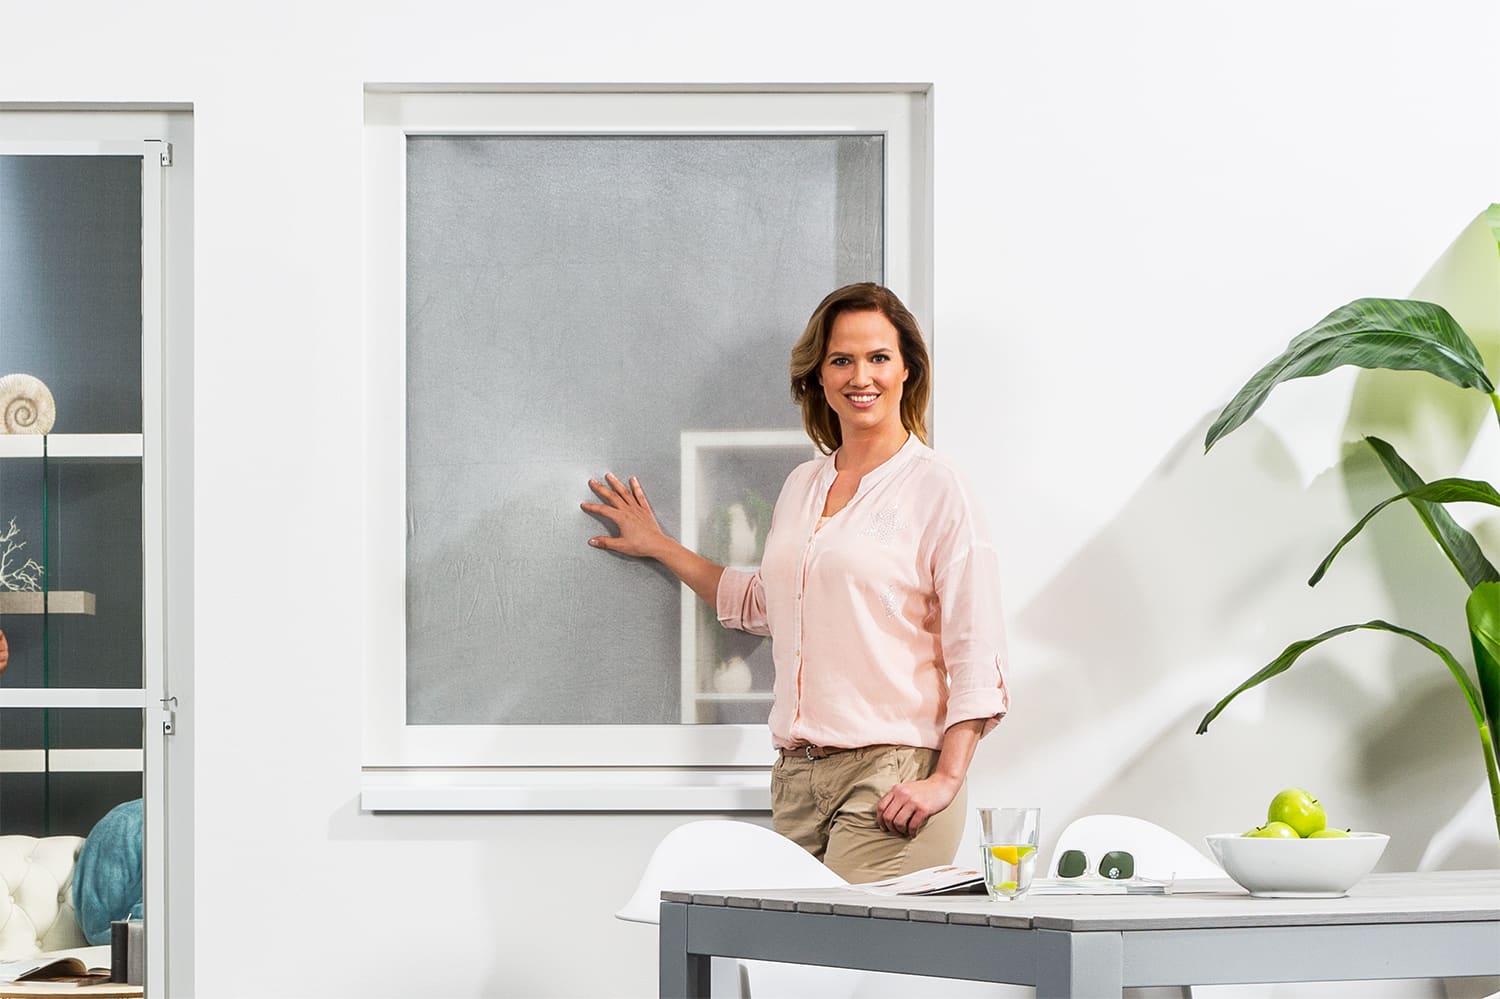 Insektenschutz für Fenster, 130 x 150 cm